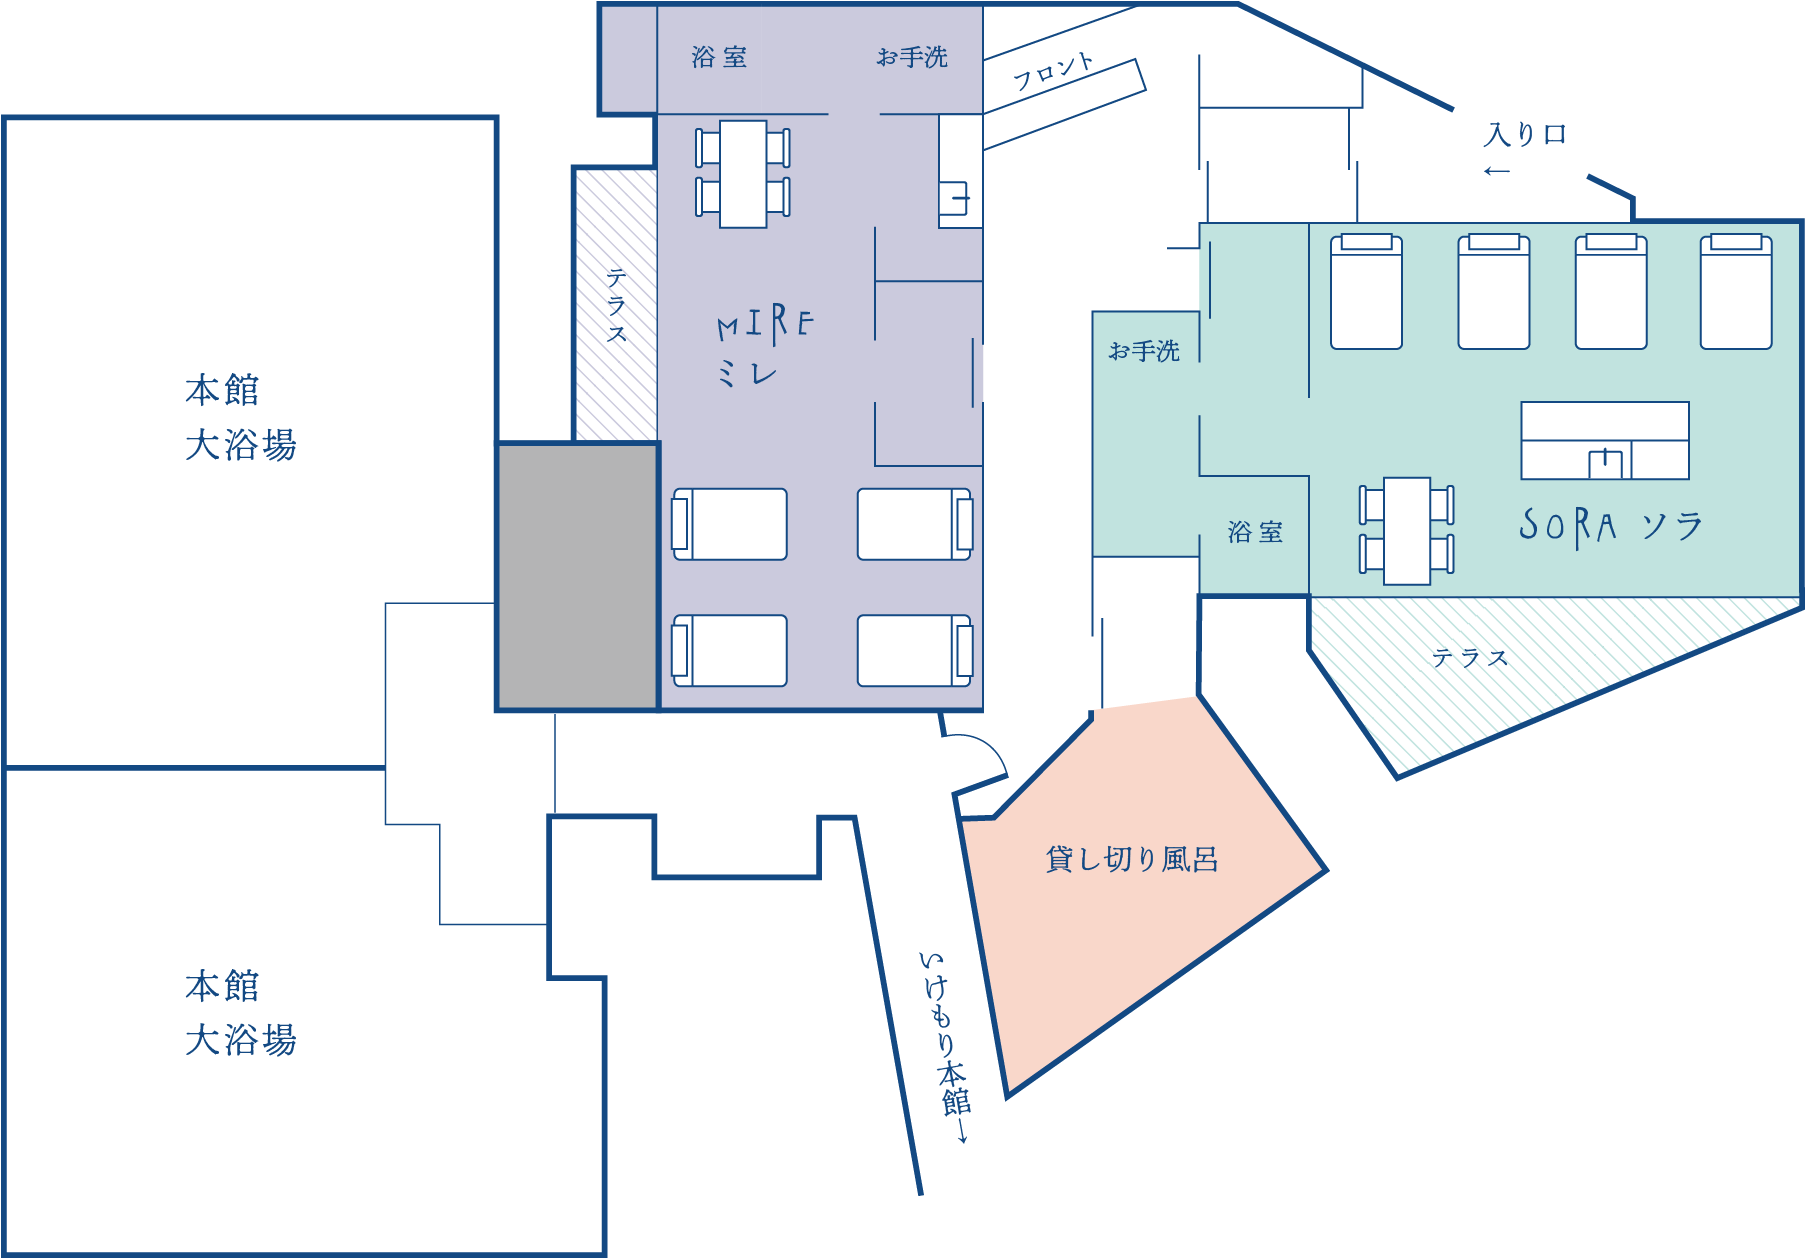 天座 館内図 フロアマップ